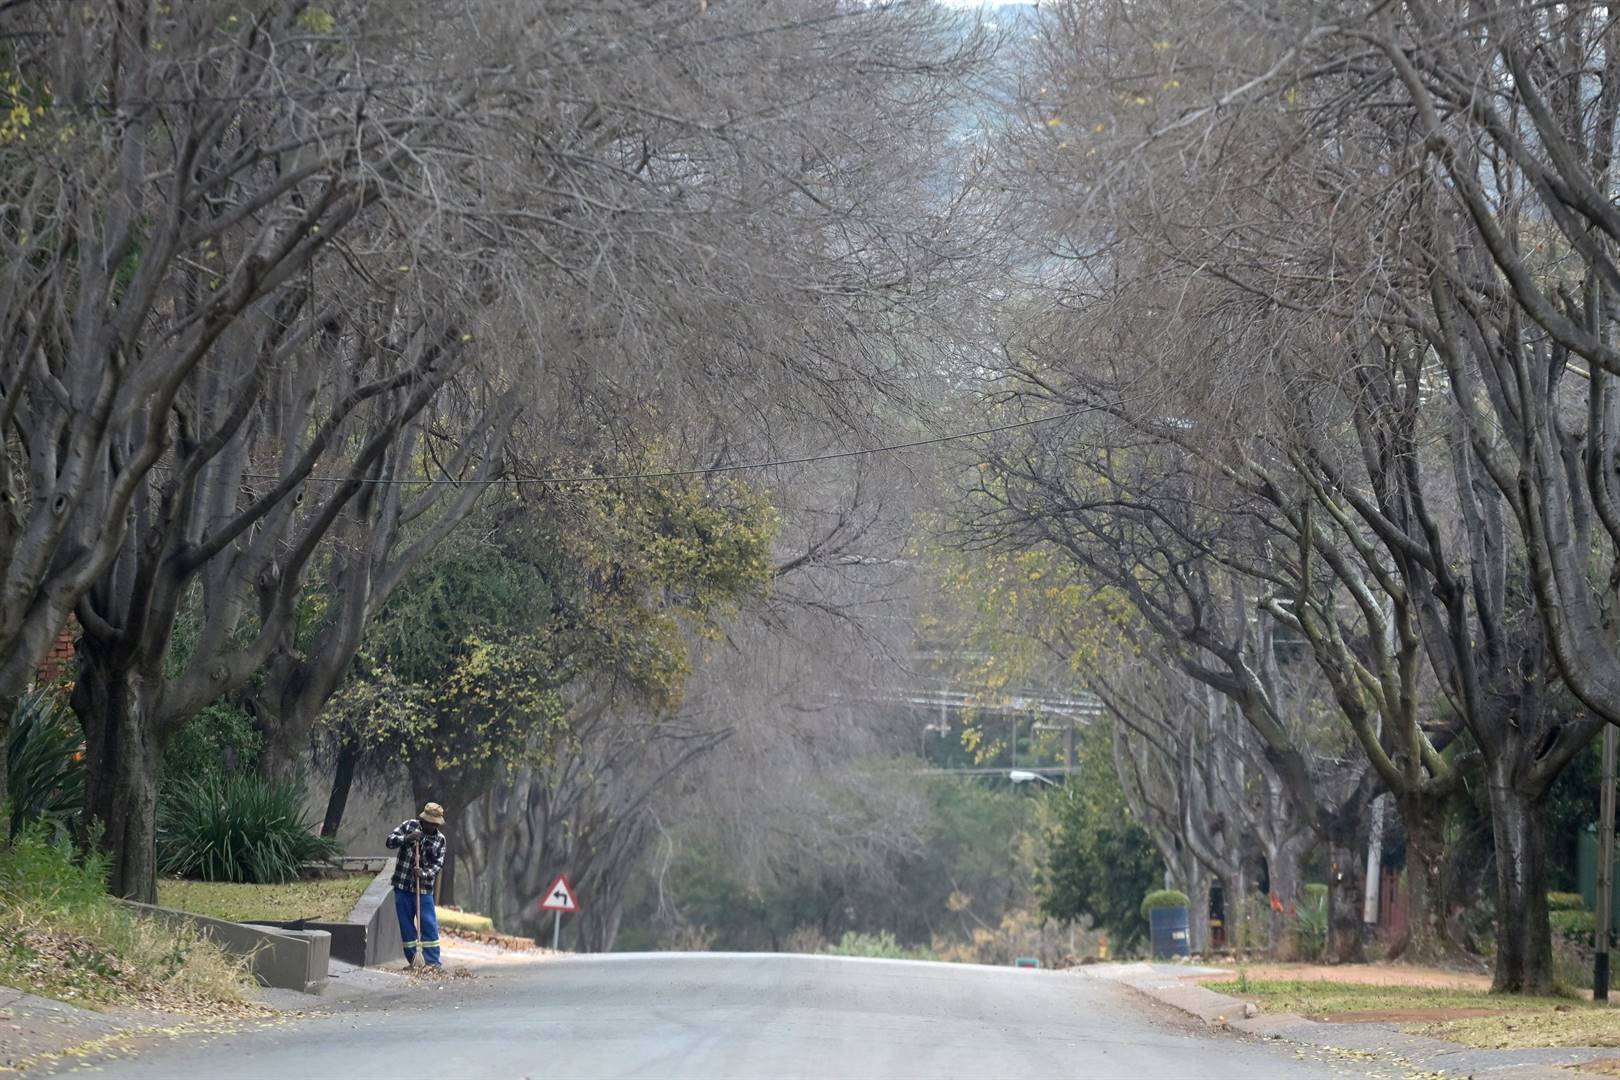 ’n Werker vee blare in Ulundilaan in Mountainview, Pretoria, waar die meeste bome reeds al hul blare vir die winter afgeskud het. Foto: Deaan Vivier